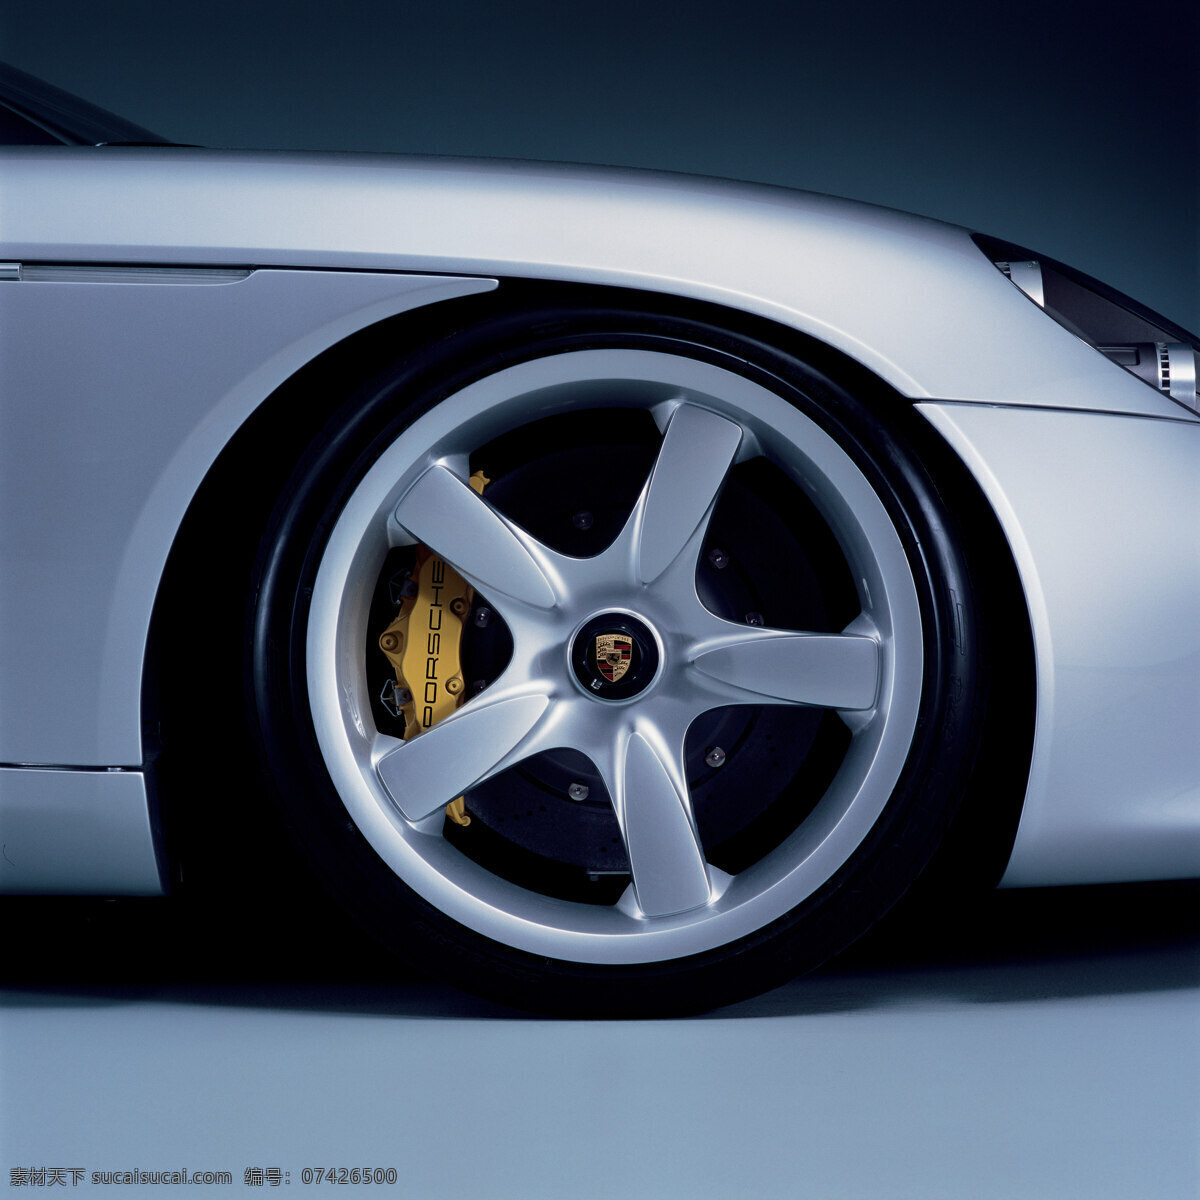 轿车 车轮 汽车 工业生产 小车 交通工具 汽车图片 现代科技